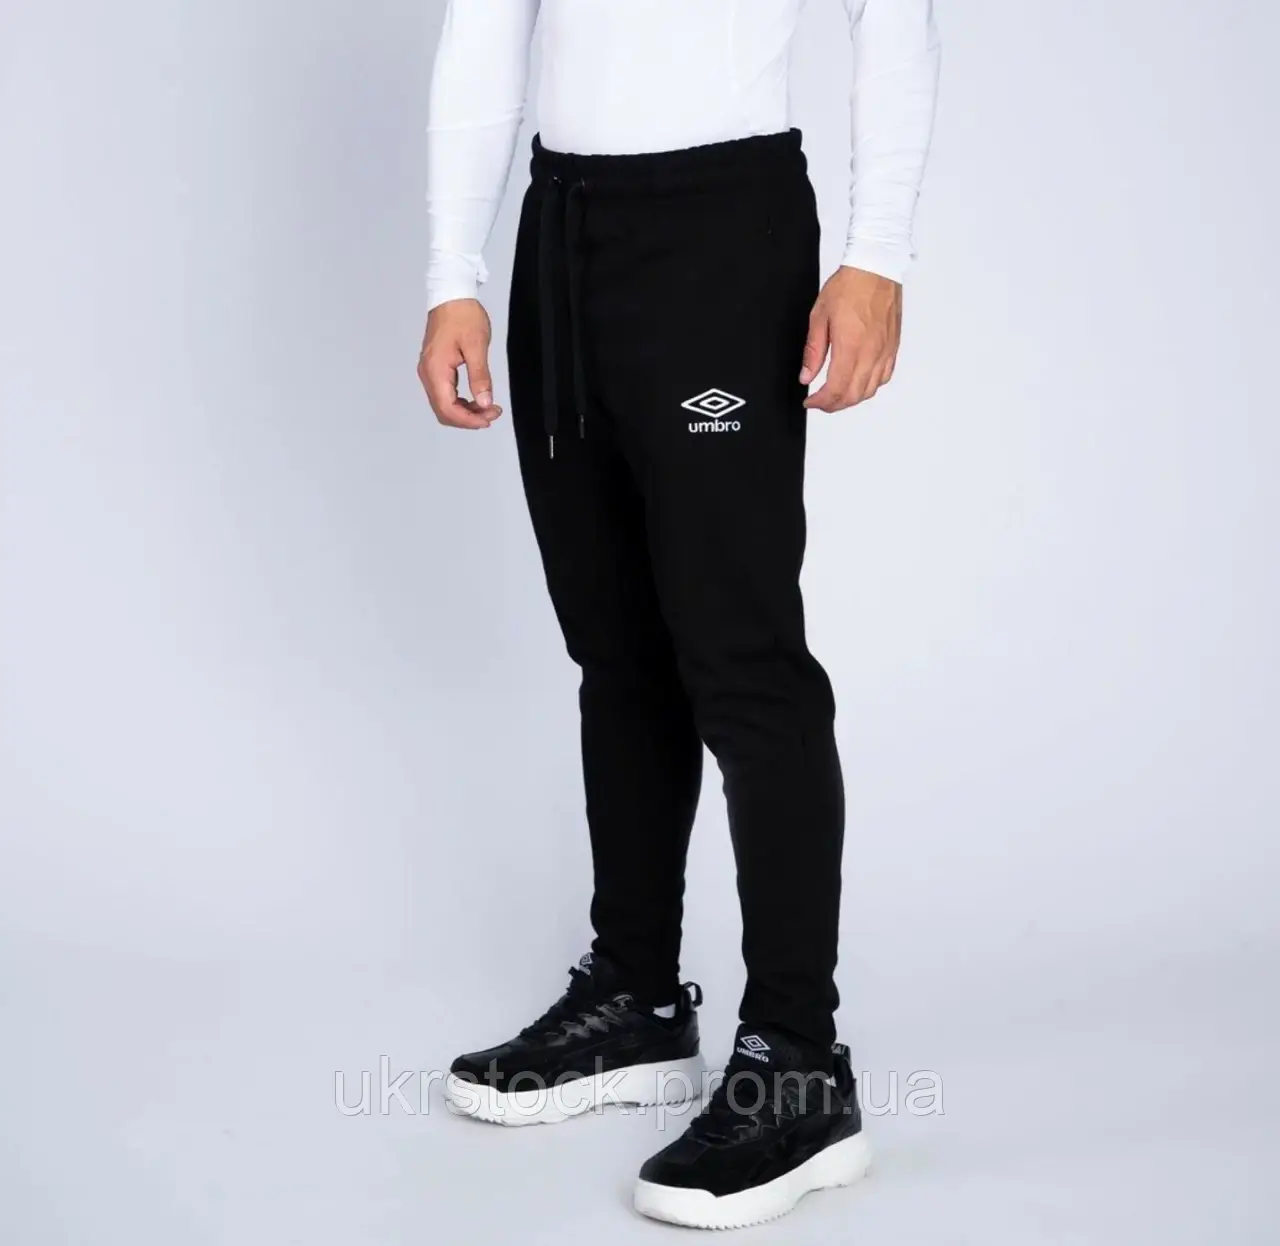 Дитячі спортивні штани Umbro, сток оптом штани